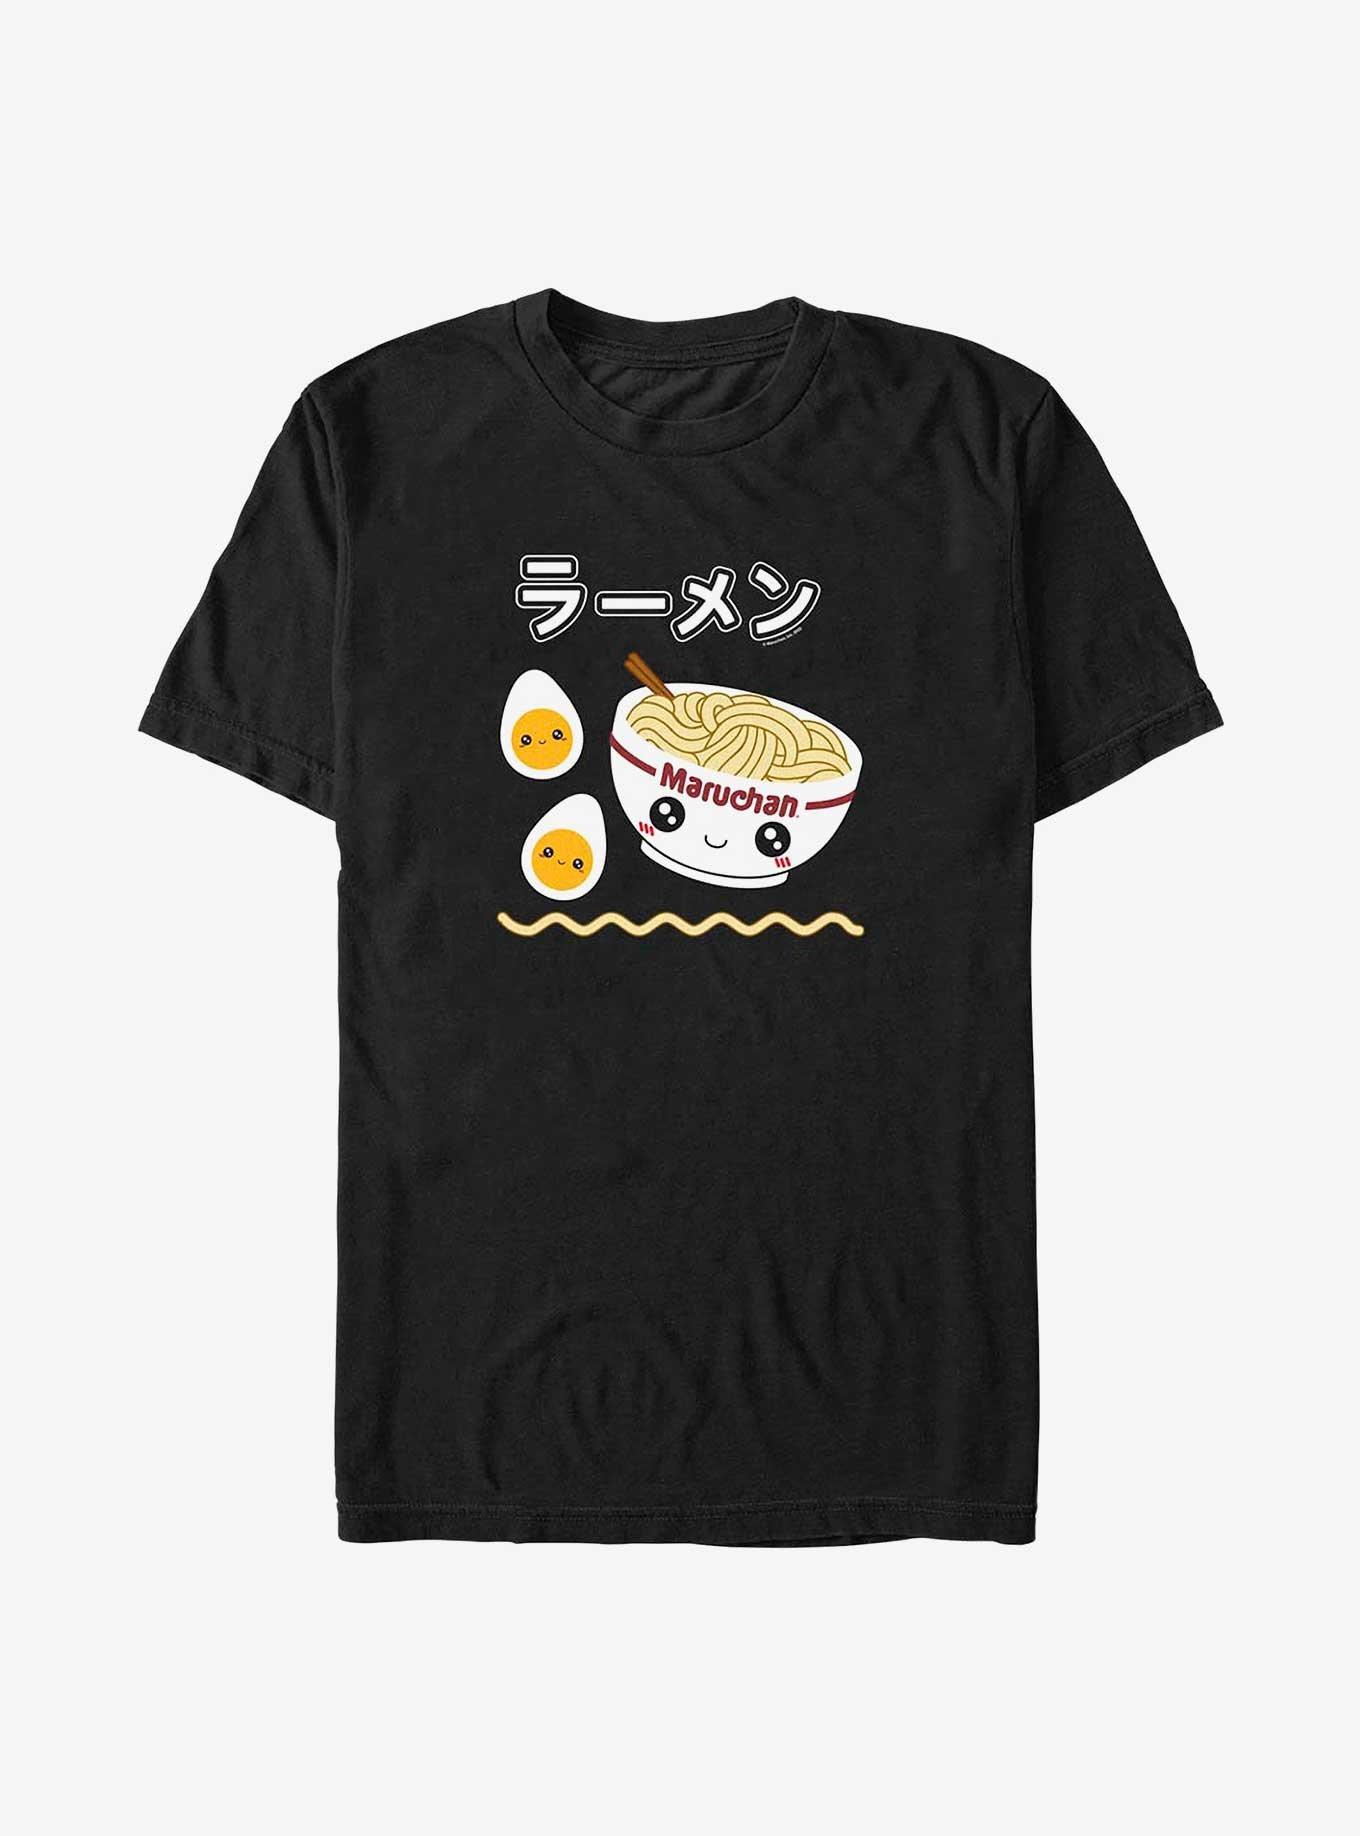 Maruchan Ramen And Eggs T-Shirt, BLACK, hi-res